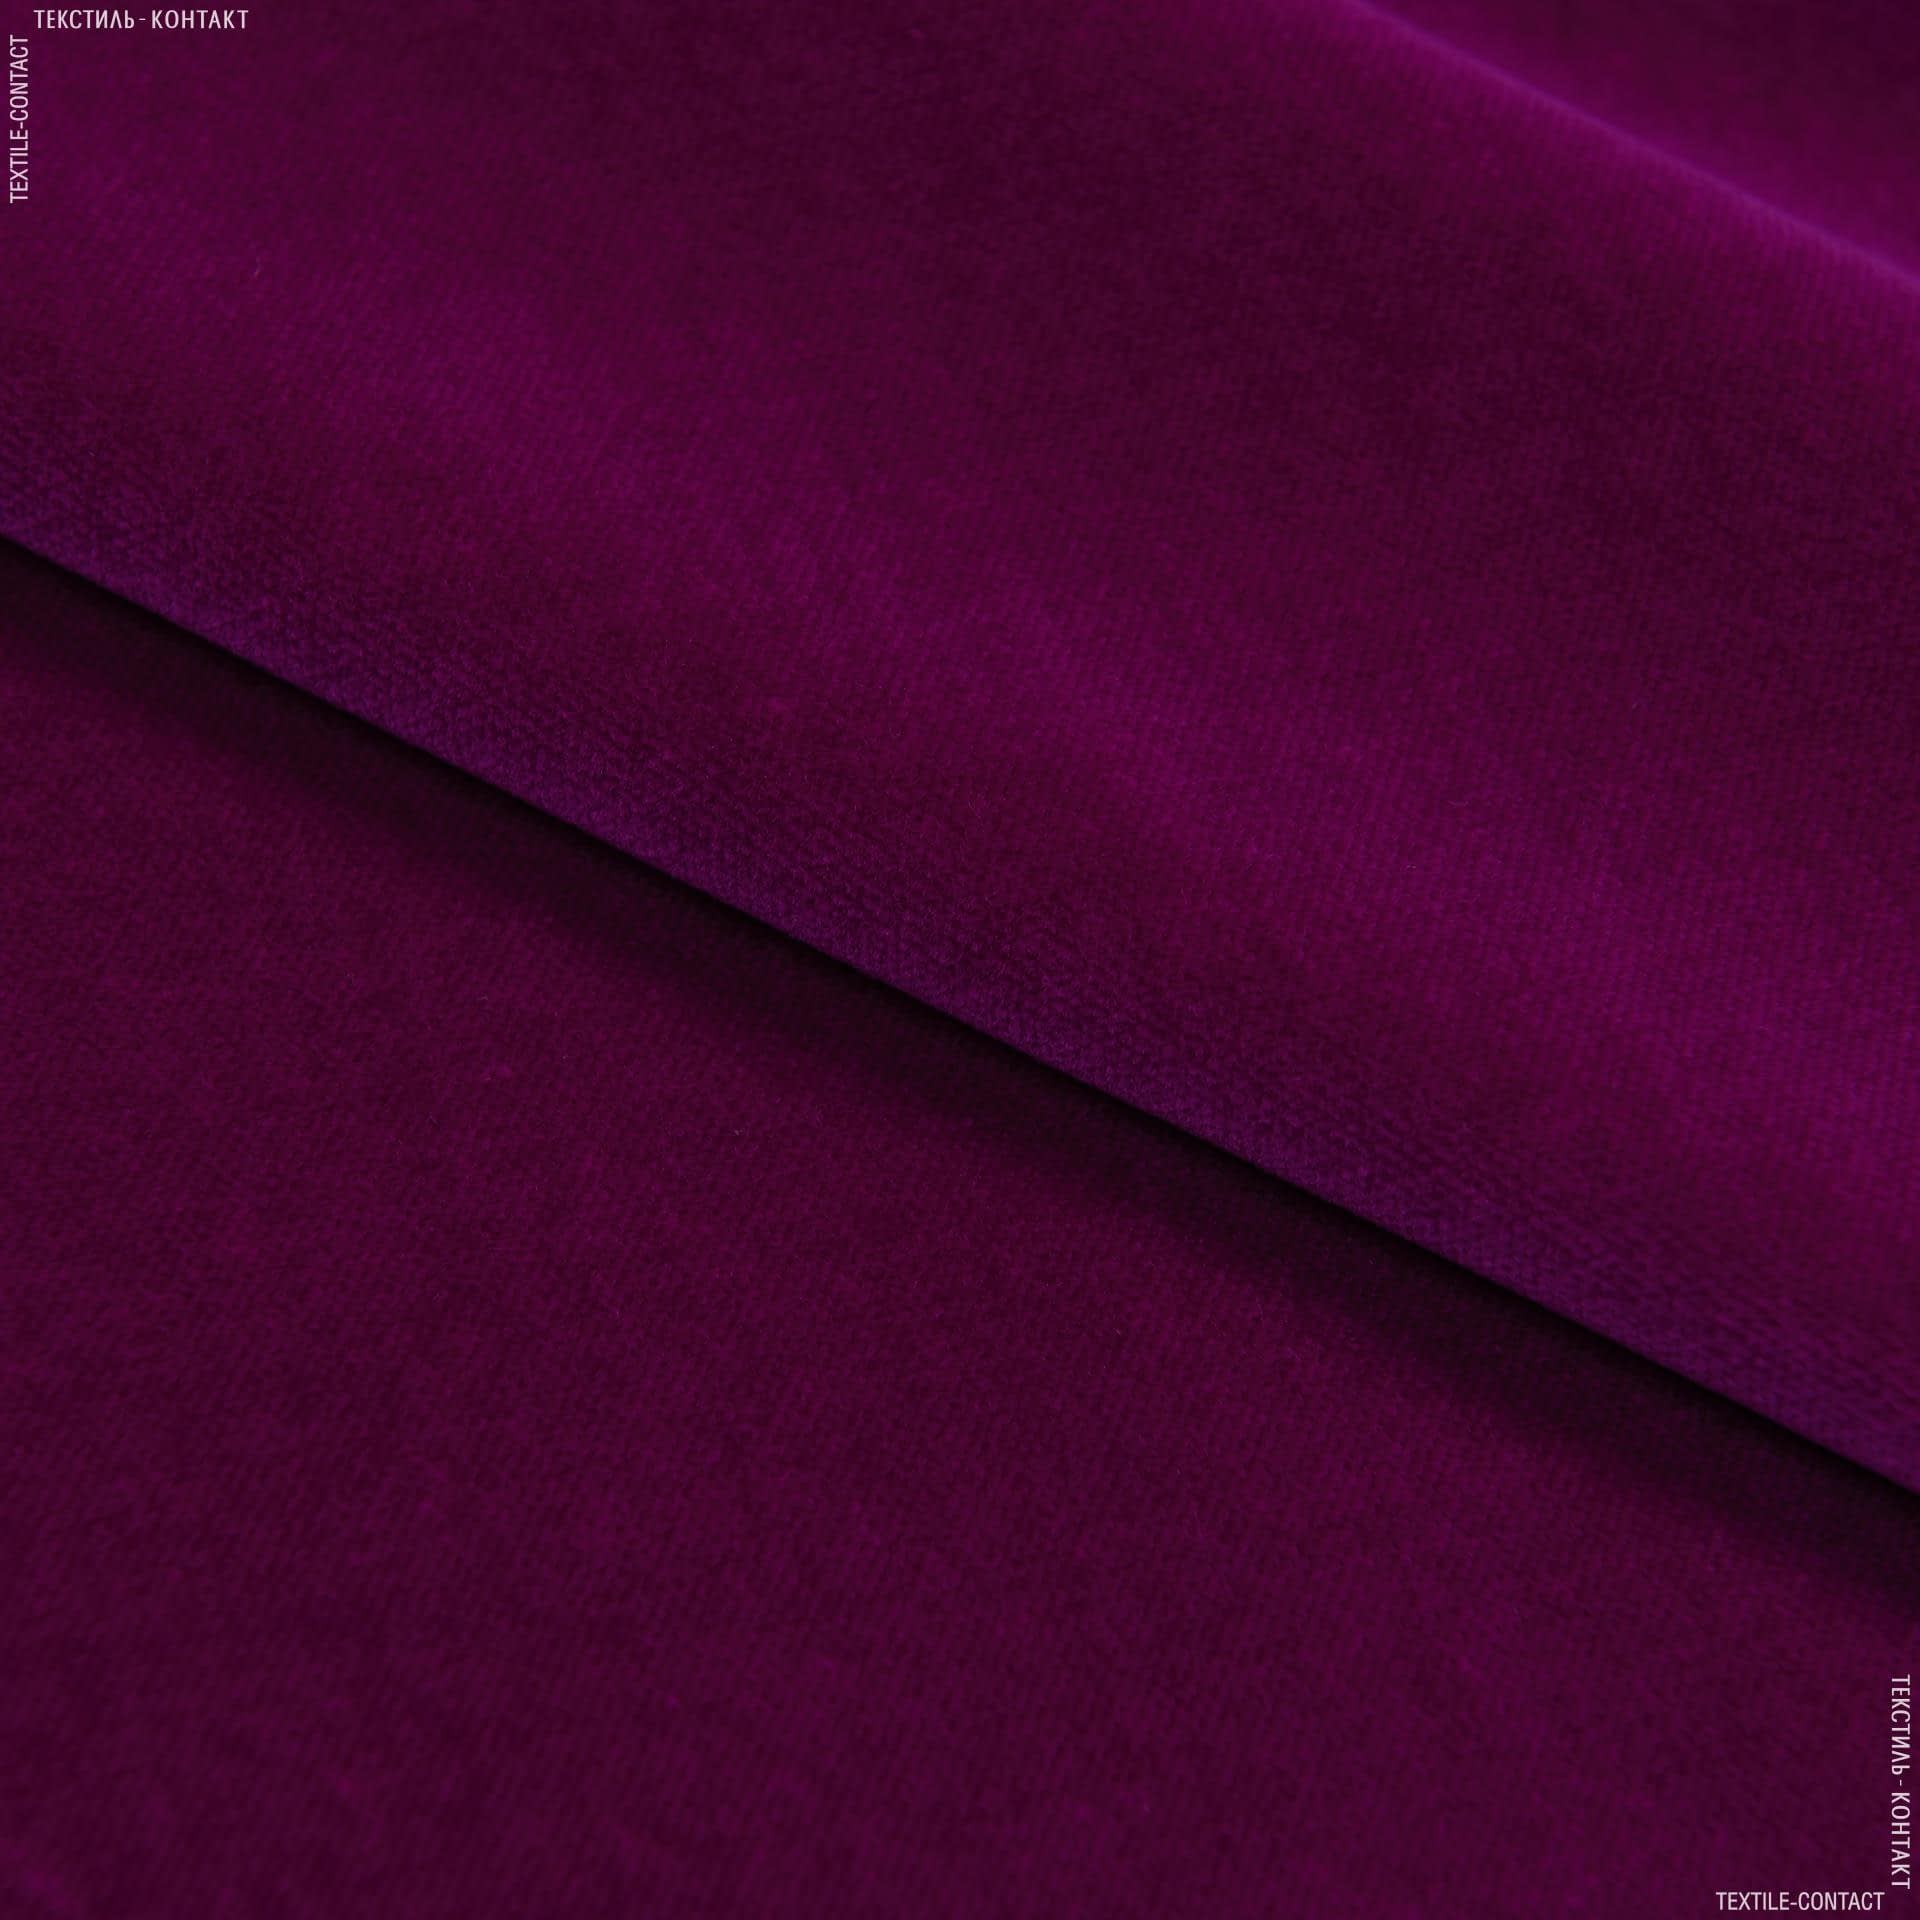 Тканини театральні тканини - Велюр Новара/NOVARA сток фіолетовий, баклажановий